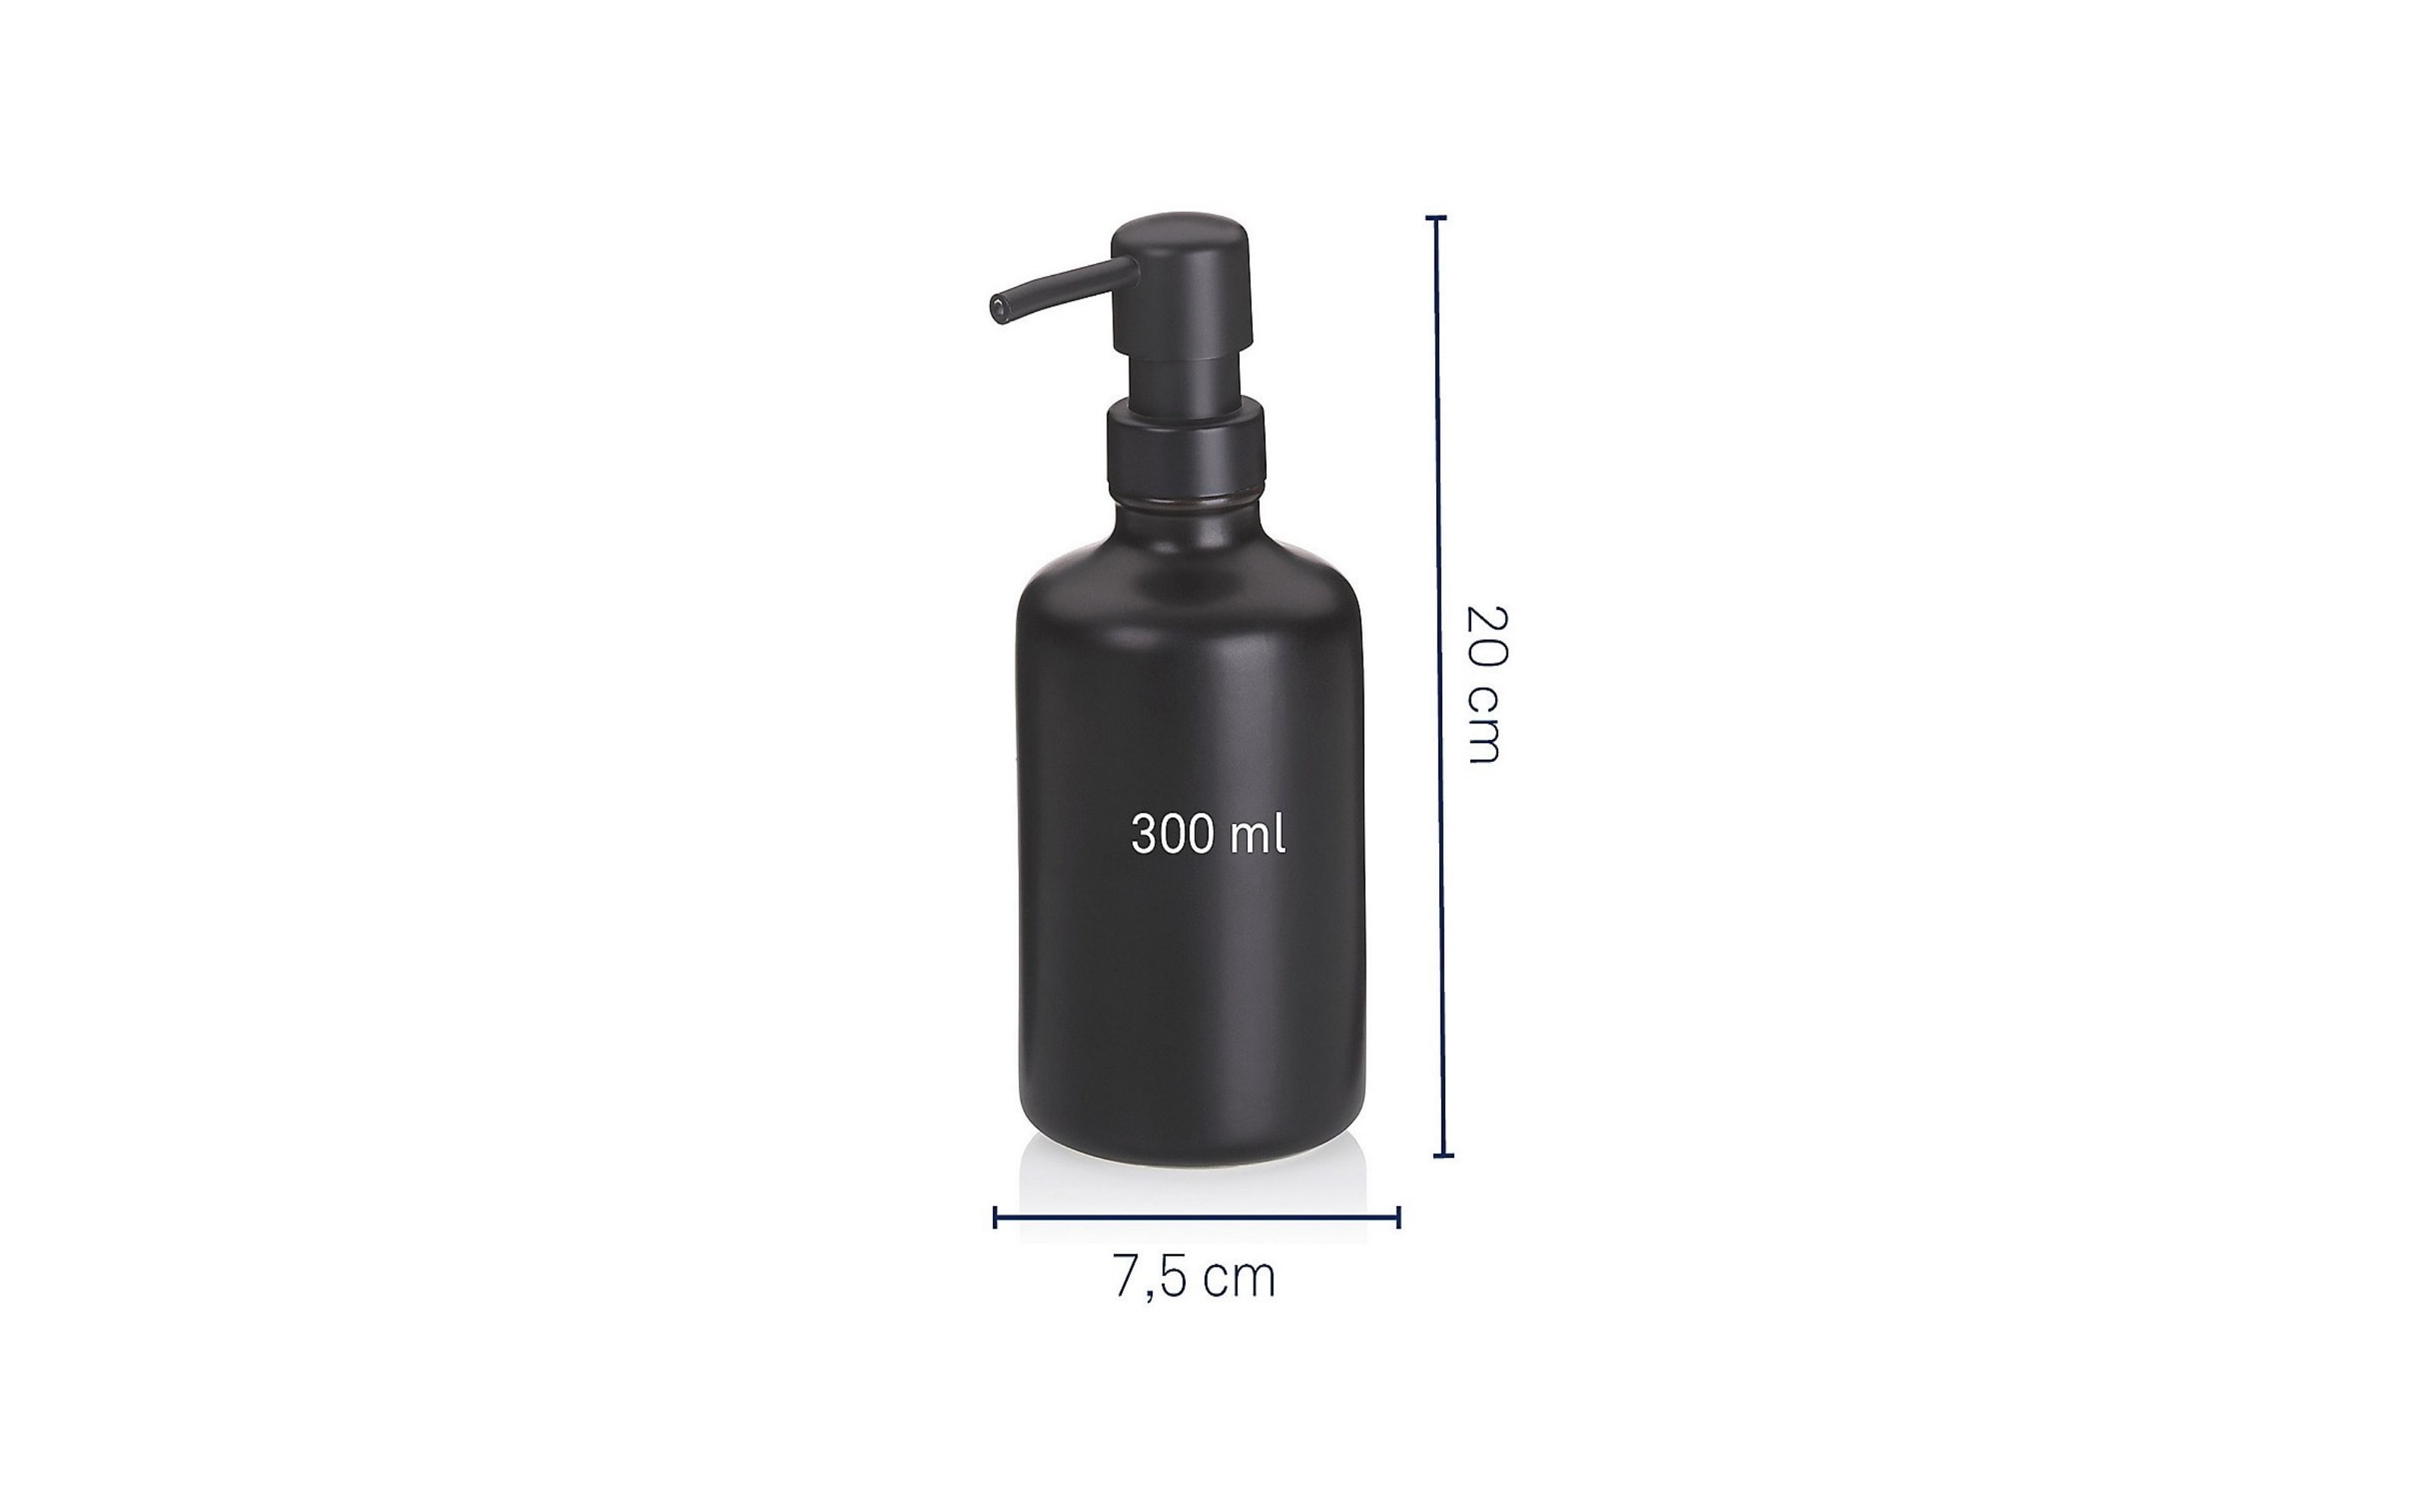  Universal-Pumpspender Leonie, Keramik schwarz, 300 ml